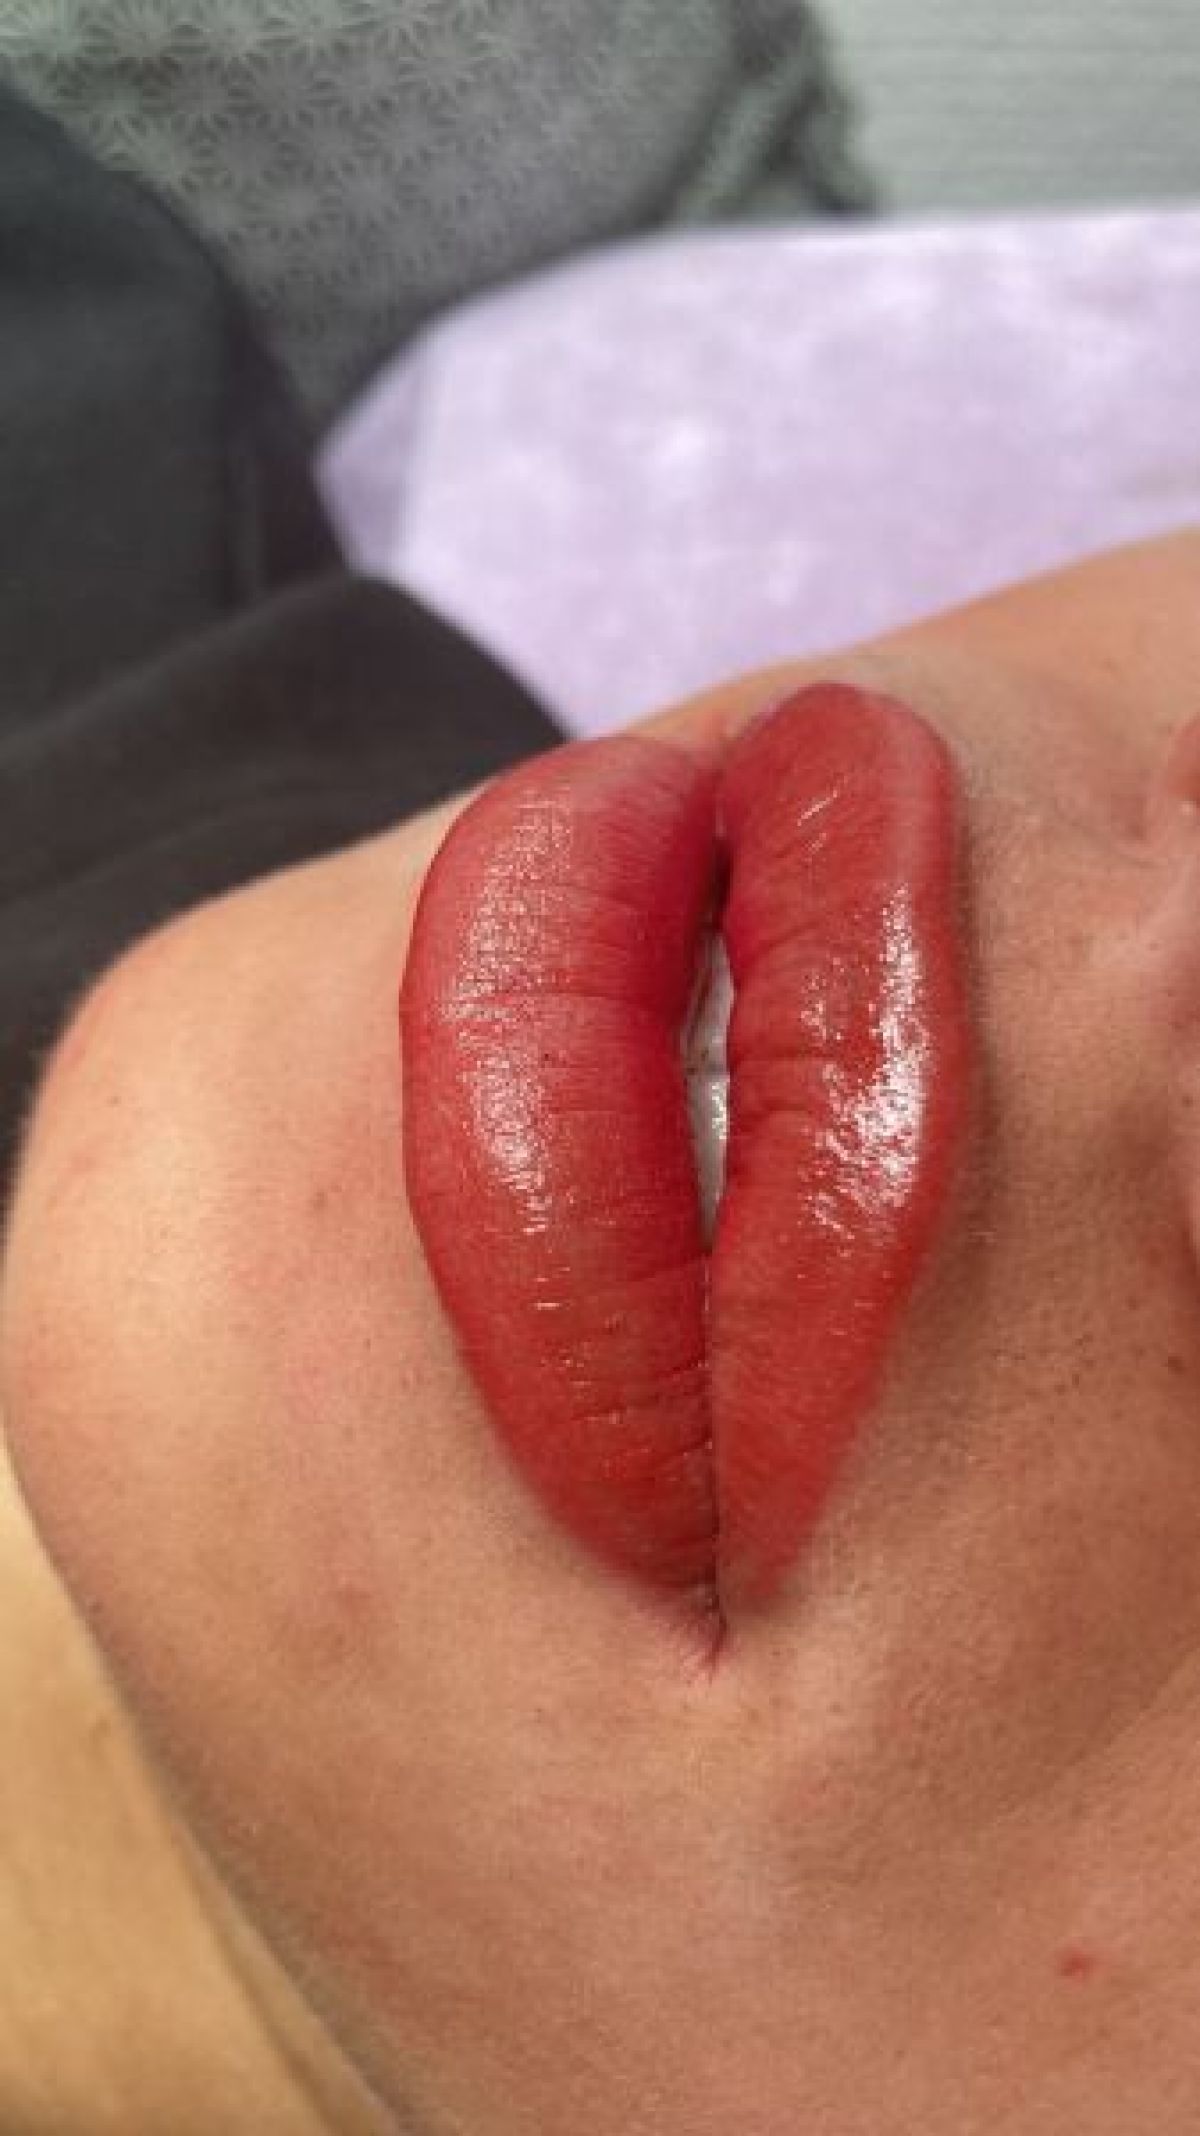 Maquillage semi permanent (candy lips)  à Chanteloup-les-Vignes (78) Par Saloua - Estheca